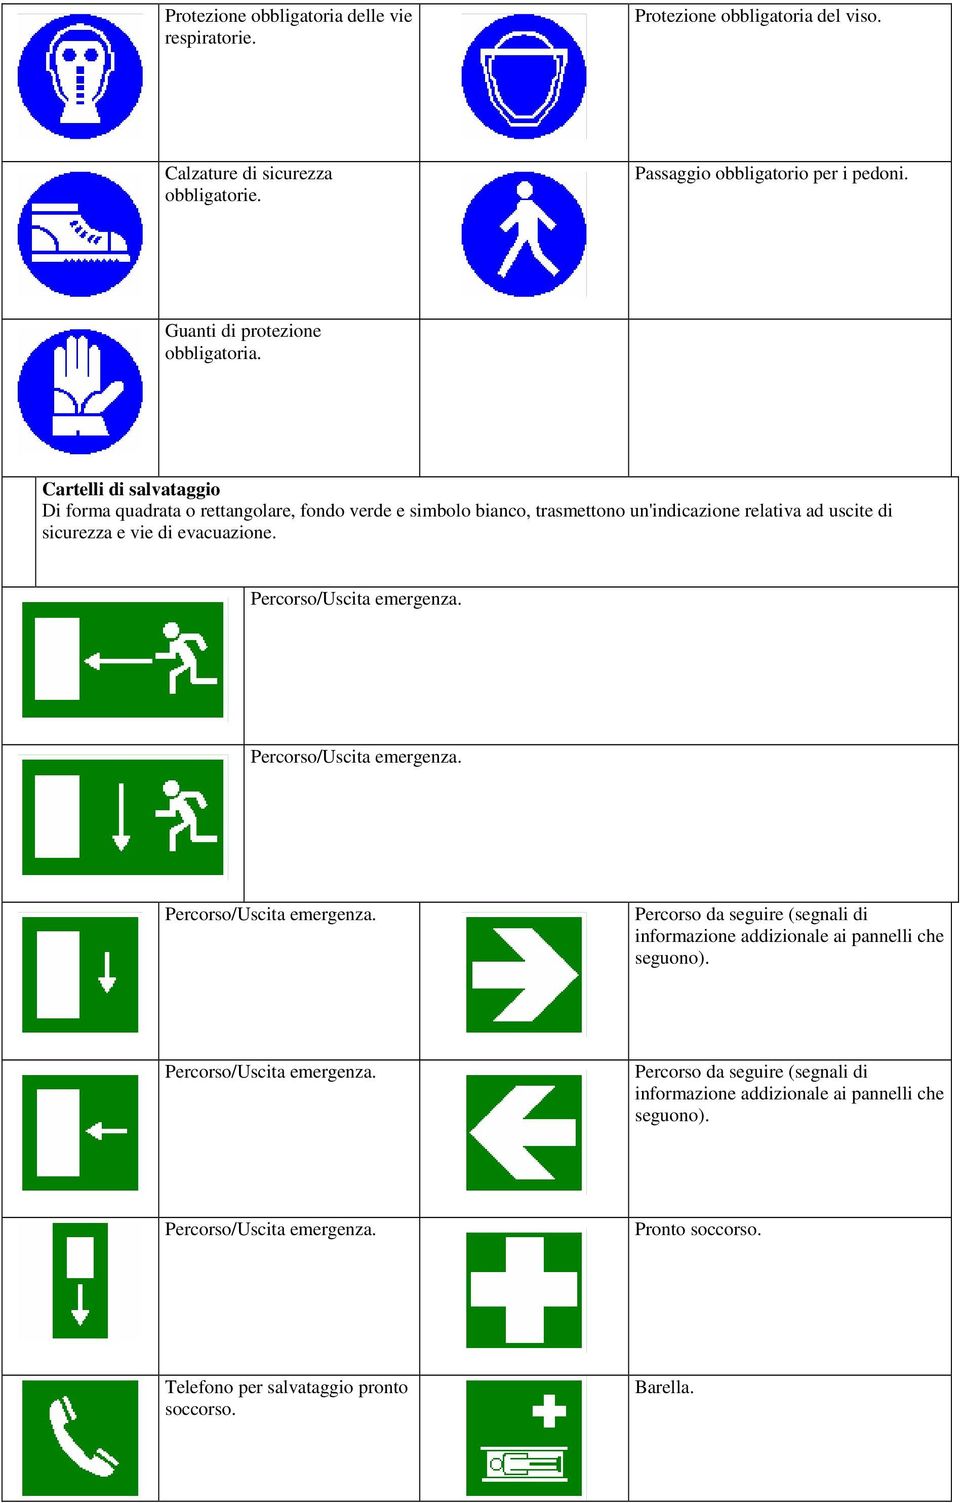 Cartelli di salvataggio Di forma quadrata o rettangolare, fondo verde e simbolo bianco, trasmettono un'indicazione relativa ad uscite di sicurezza e